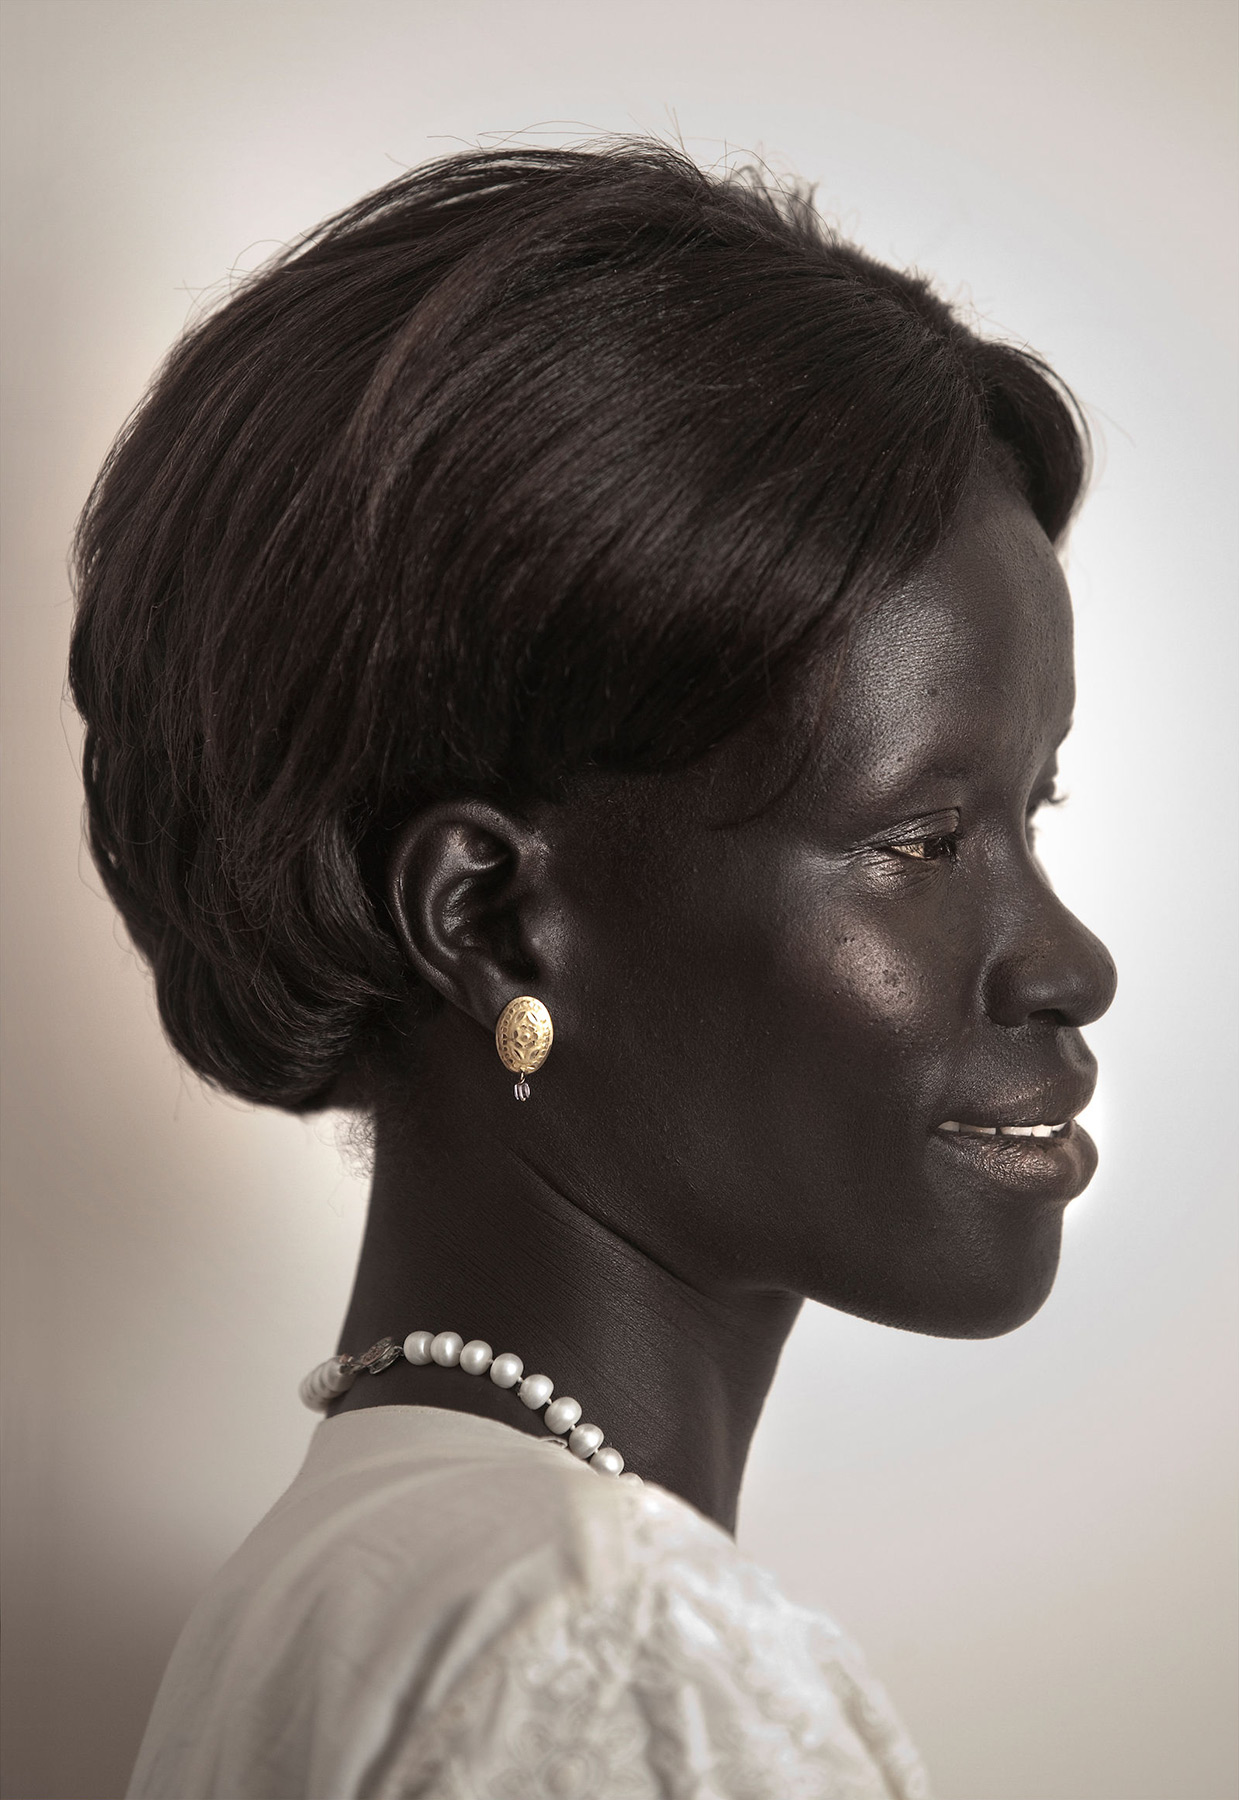 Face of South Sudan, 2012 by Melanie Faith Dove